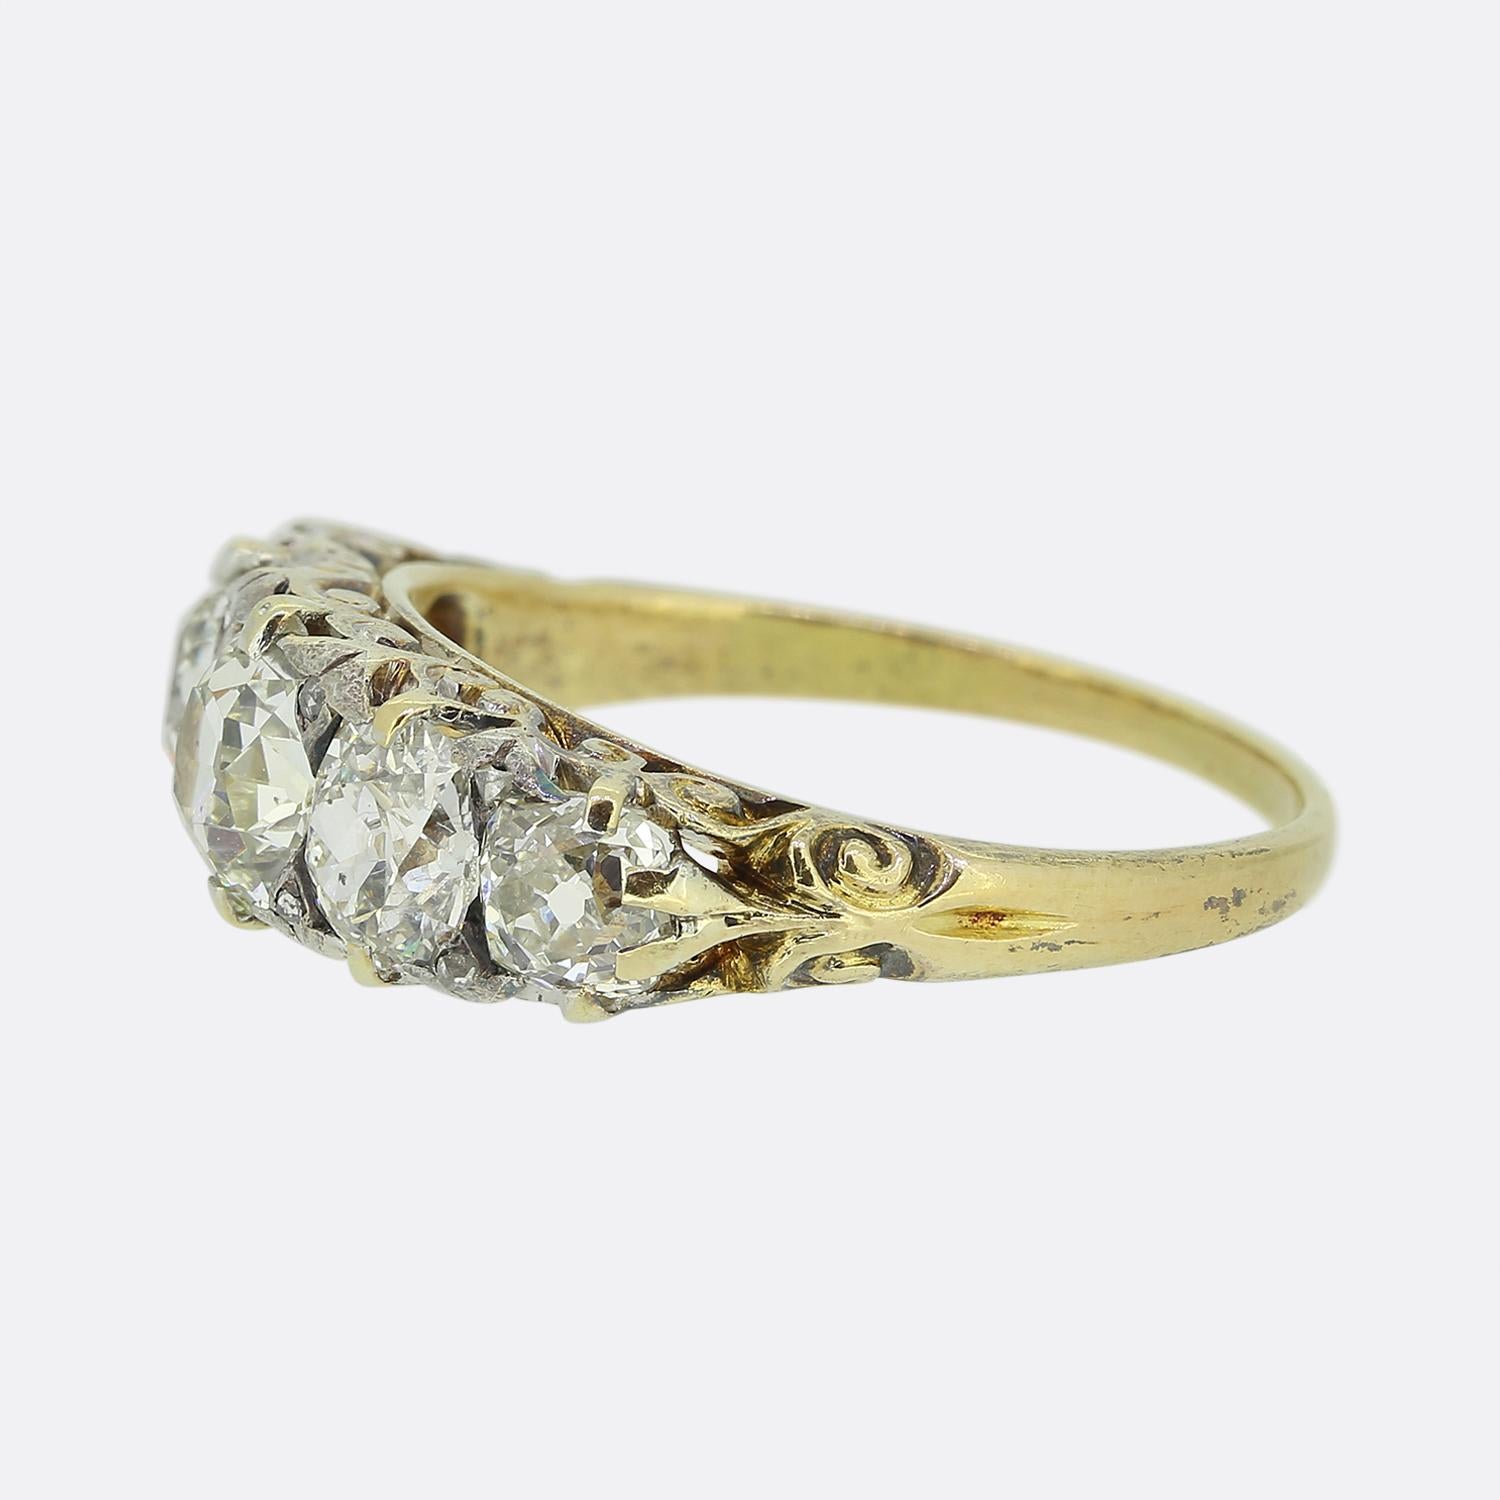 Il s'agit d'une bague victorienne en or jaune 18 ct à cinq pierres et diamants. Les diamants sont de taille ancienne, d'un blanc éclatant, et présentent une belle brillance. Ils sont également de taille variable, les plus grands se trouvant au